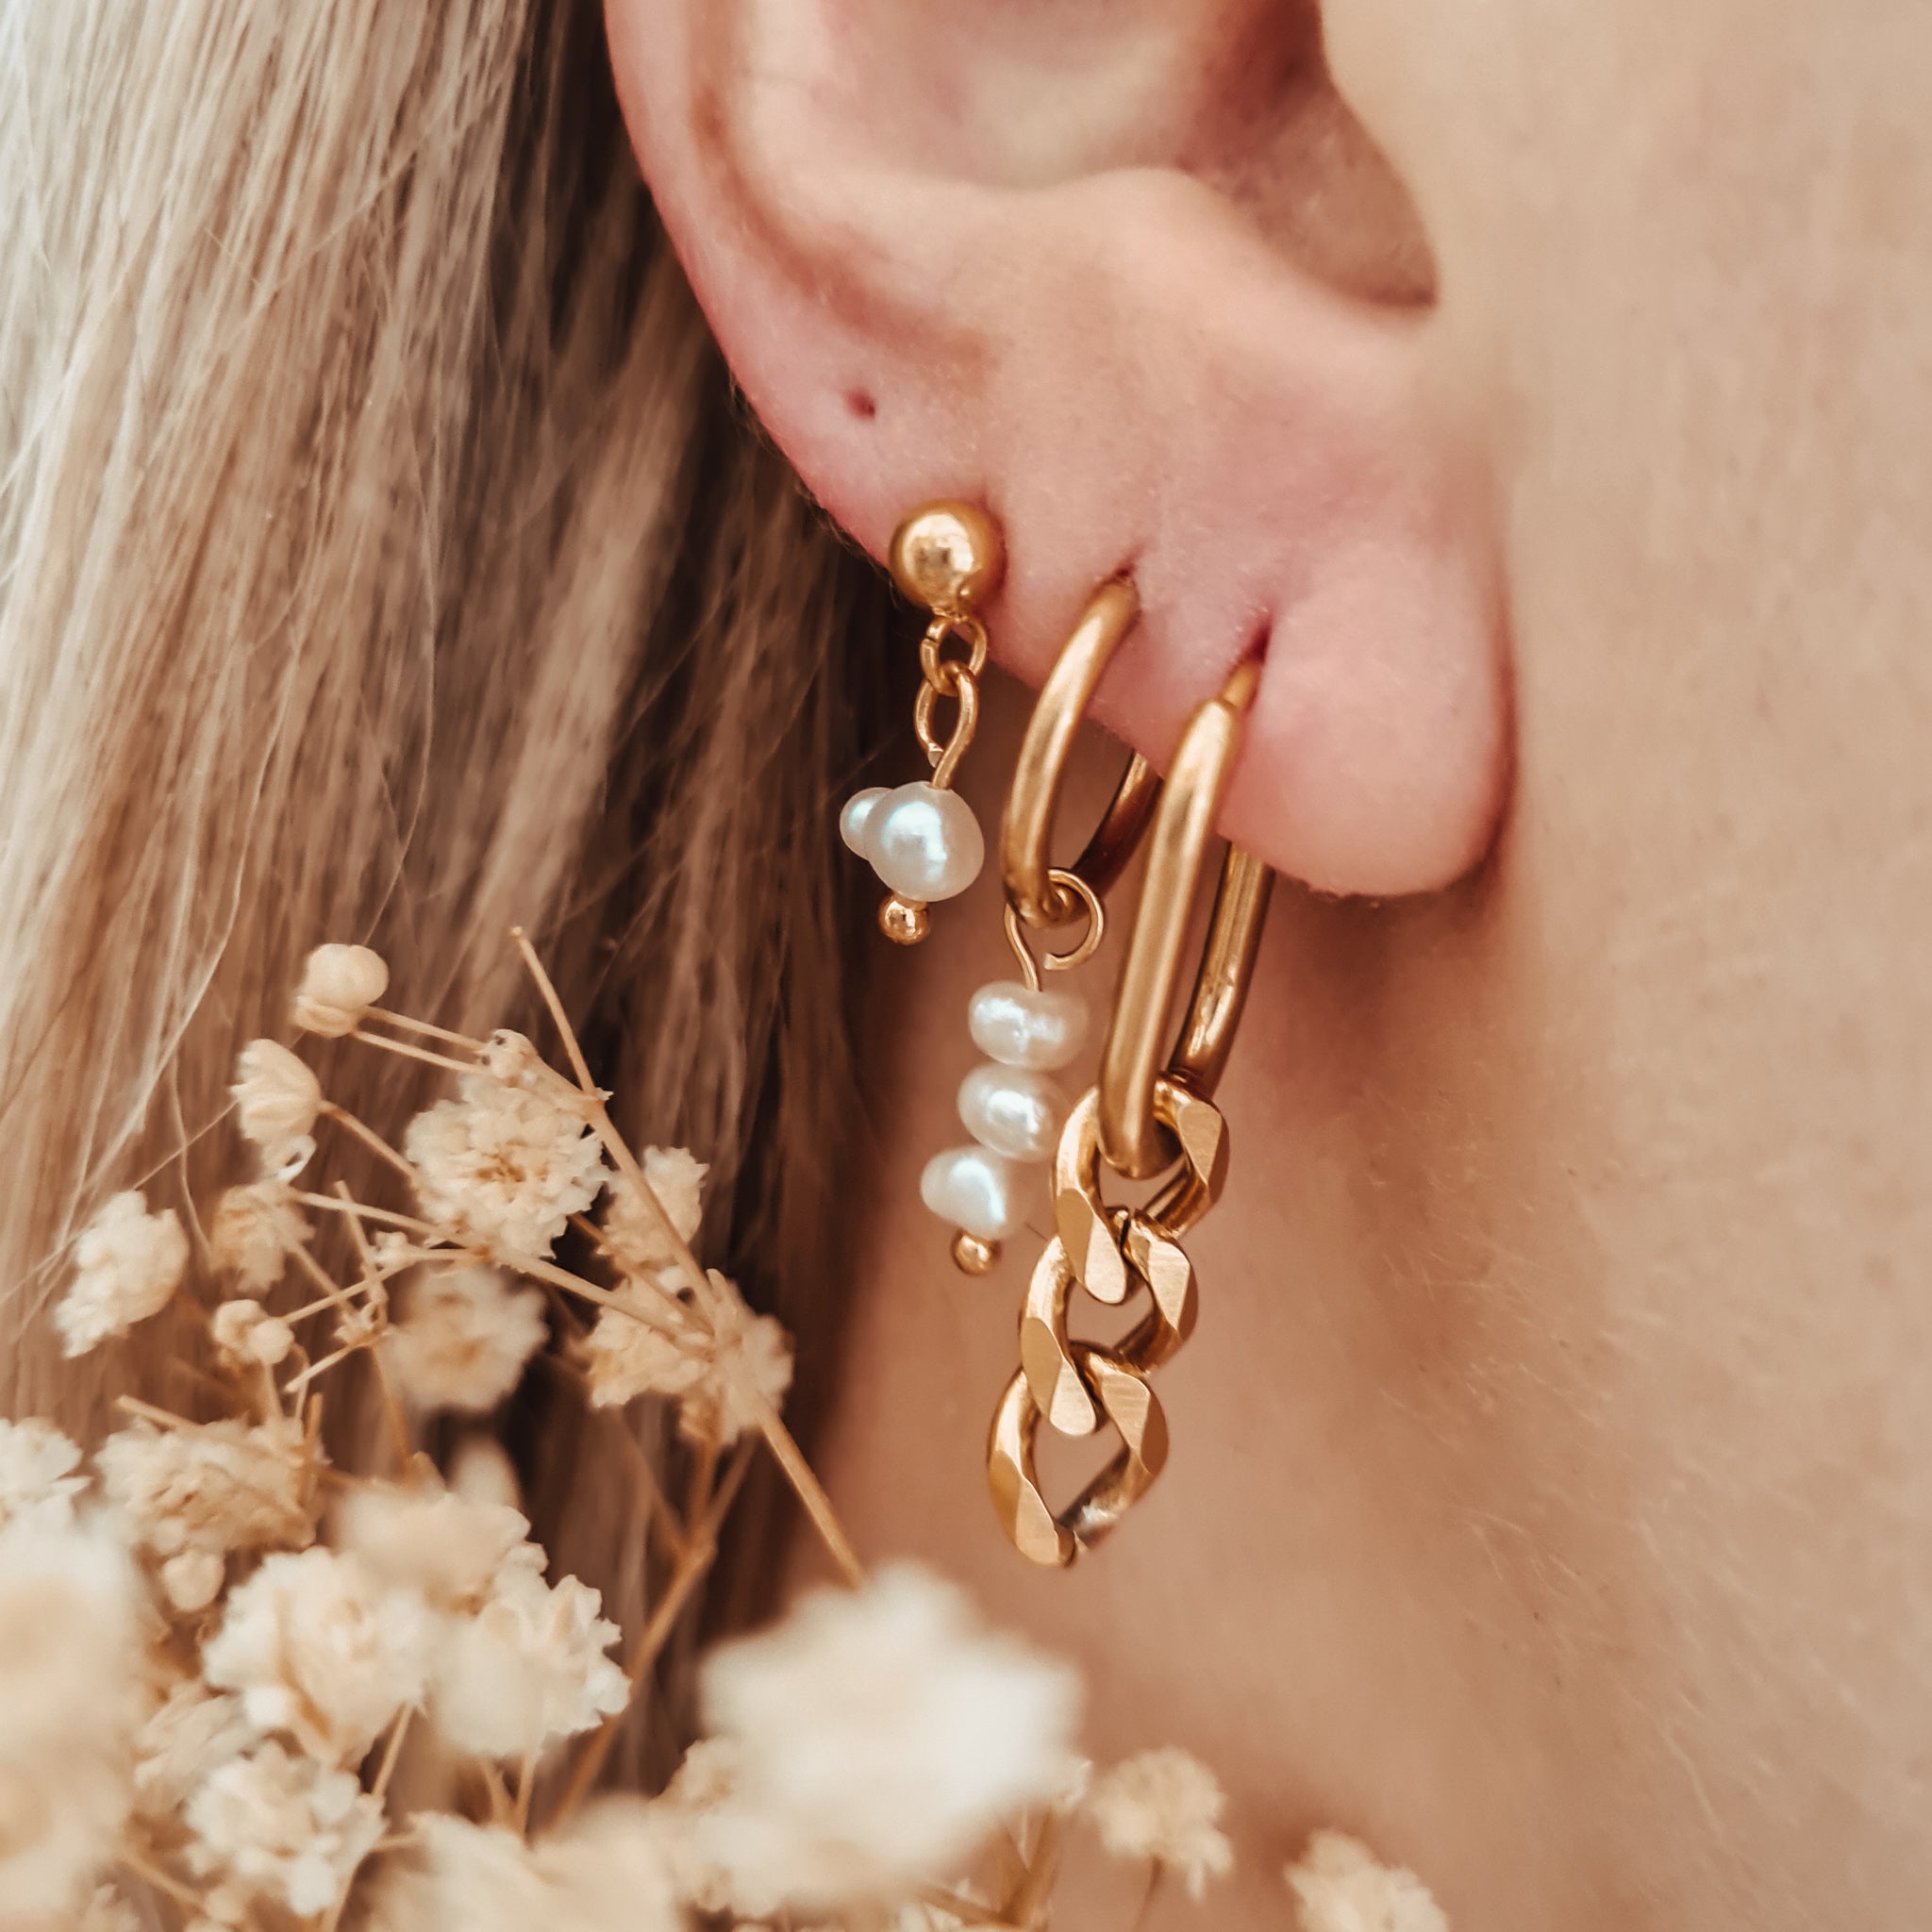 Oval earrings necklace